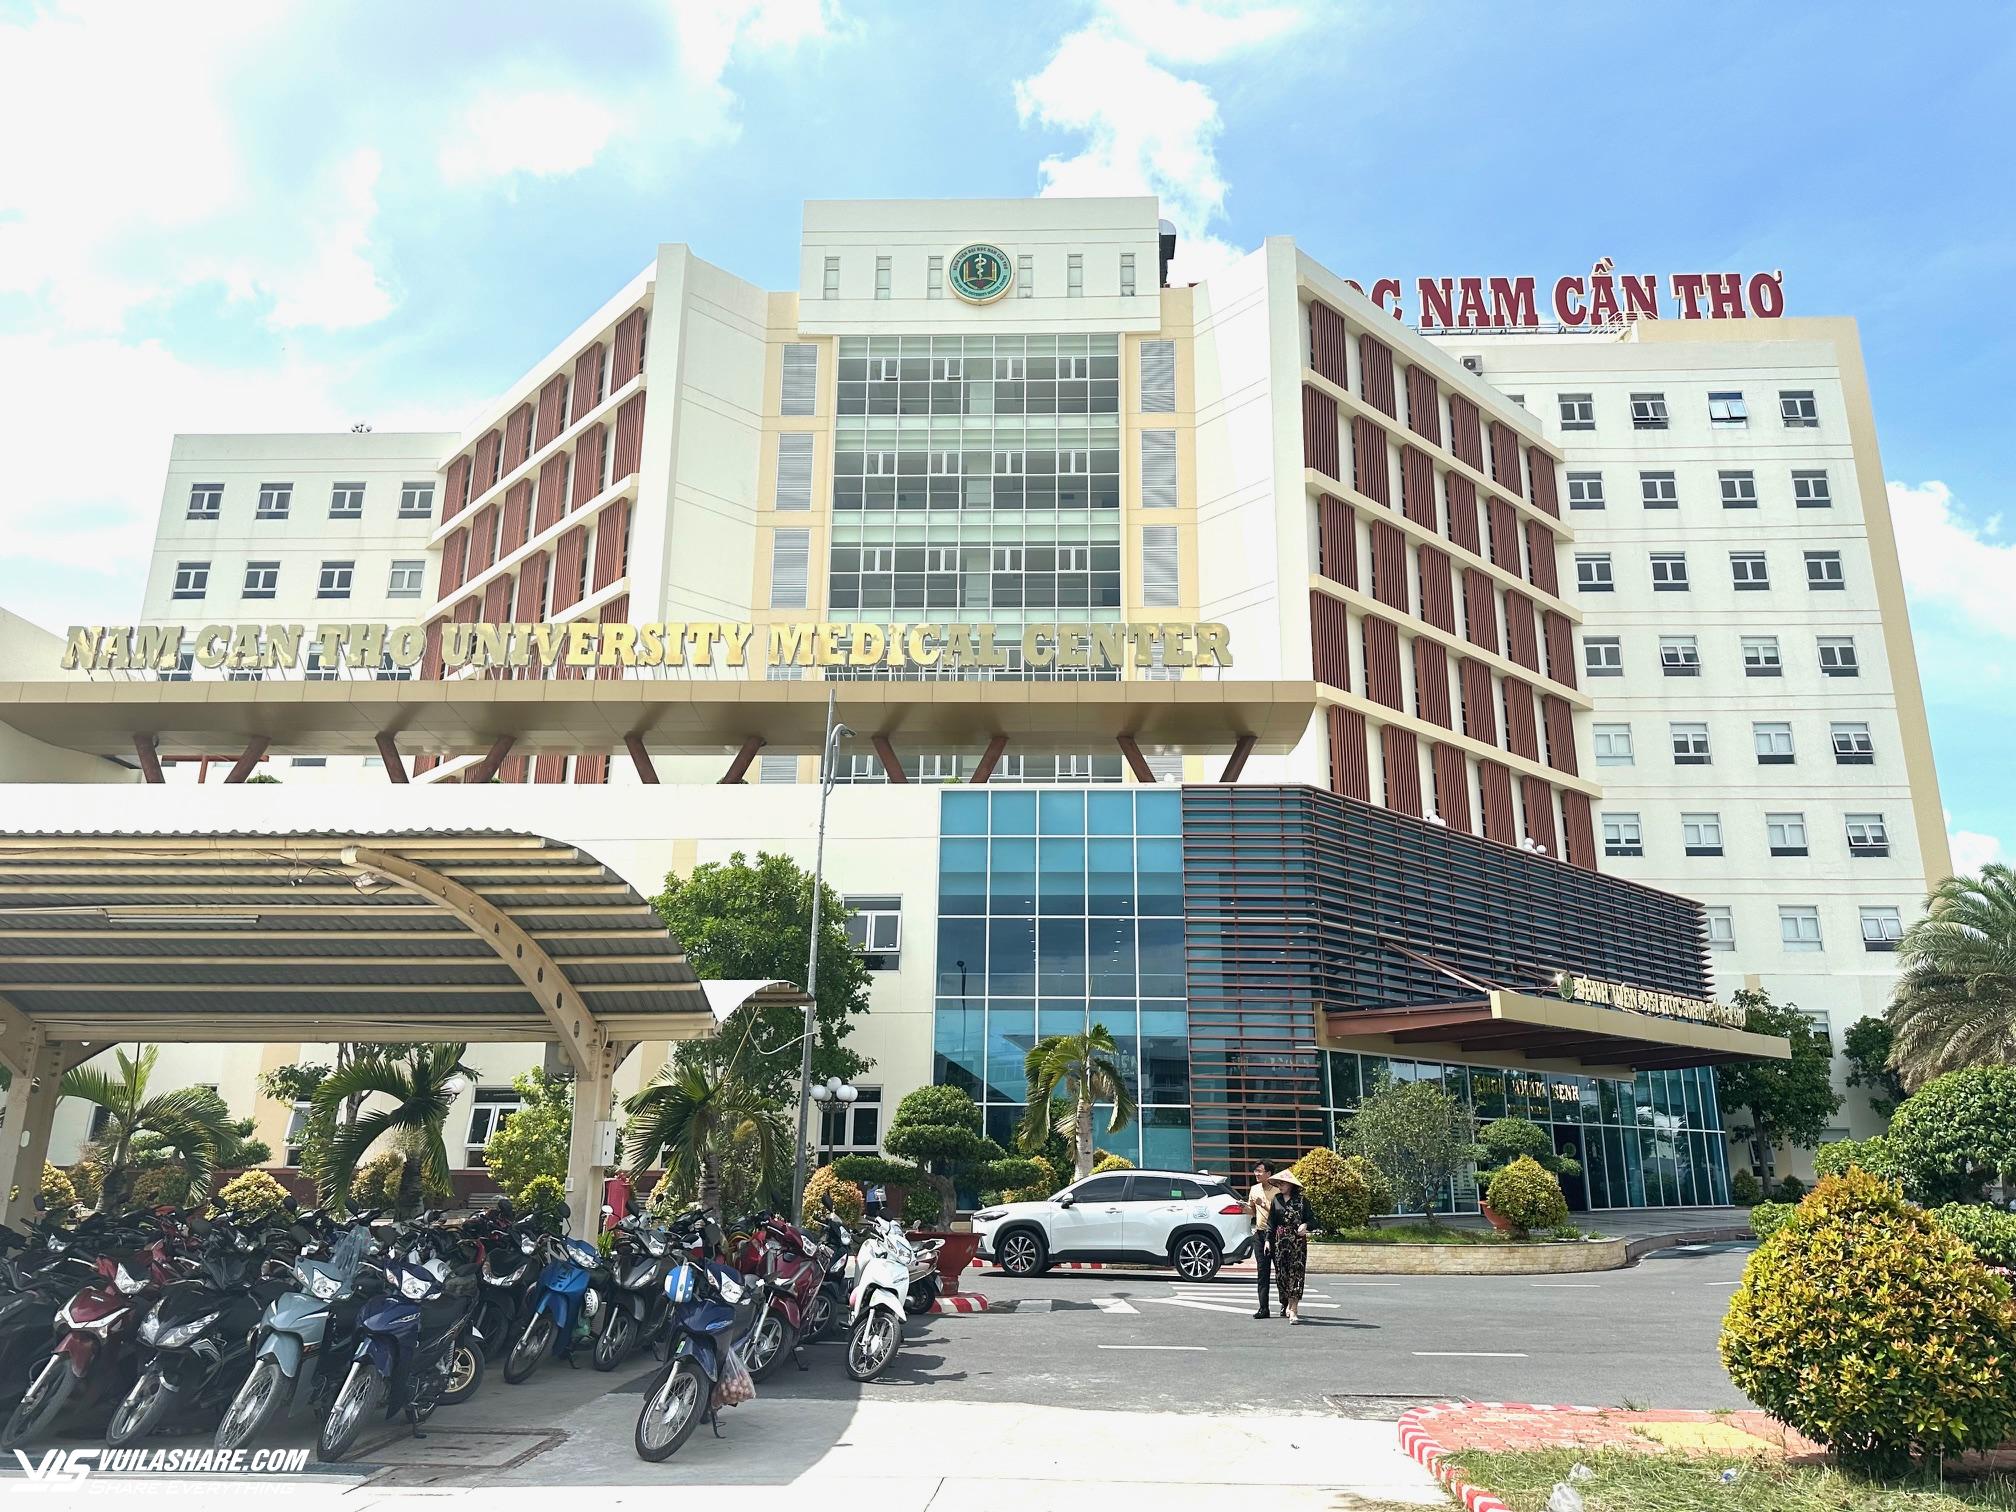 Bệnh viện ĐH Nam Cần Thơ cứu chữa nhiều ca bệnh khó- Ảnh 2.